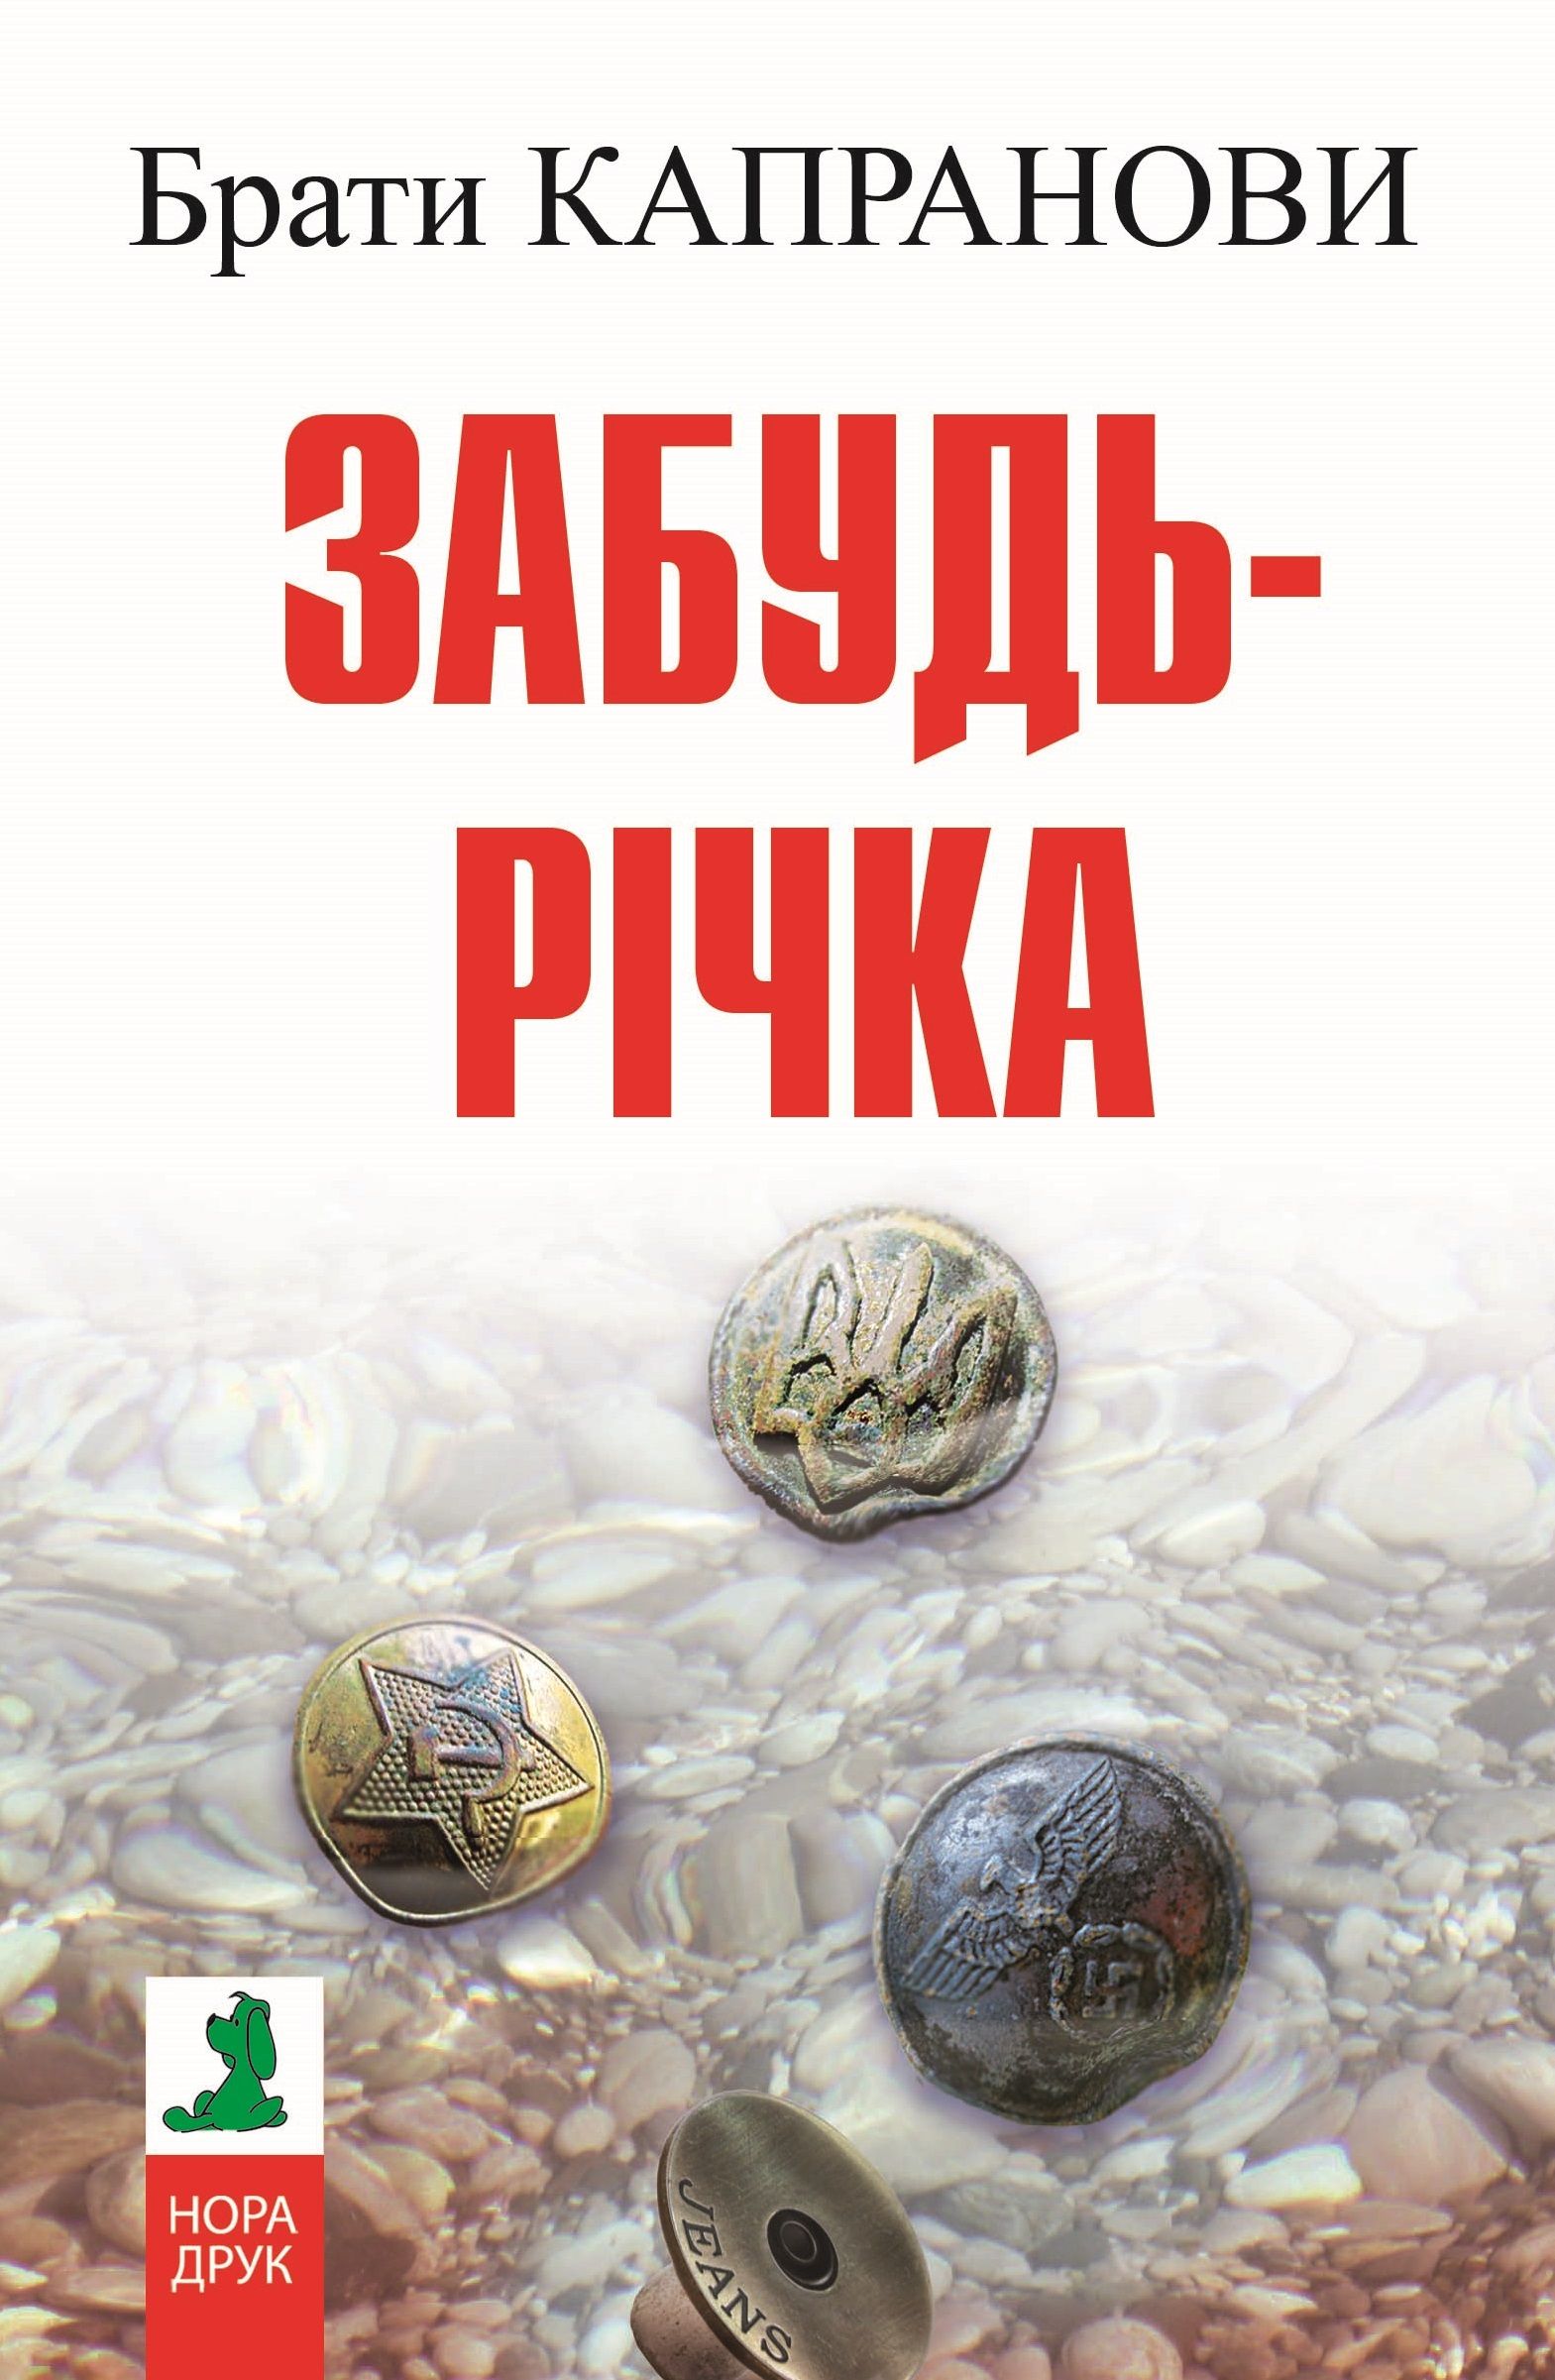 Забудь-річка - Брати Капранови - Слухати Книги Українською Онлайн Безкоштовно 📘 Knigi-Audio.com/uk/